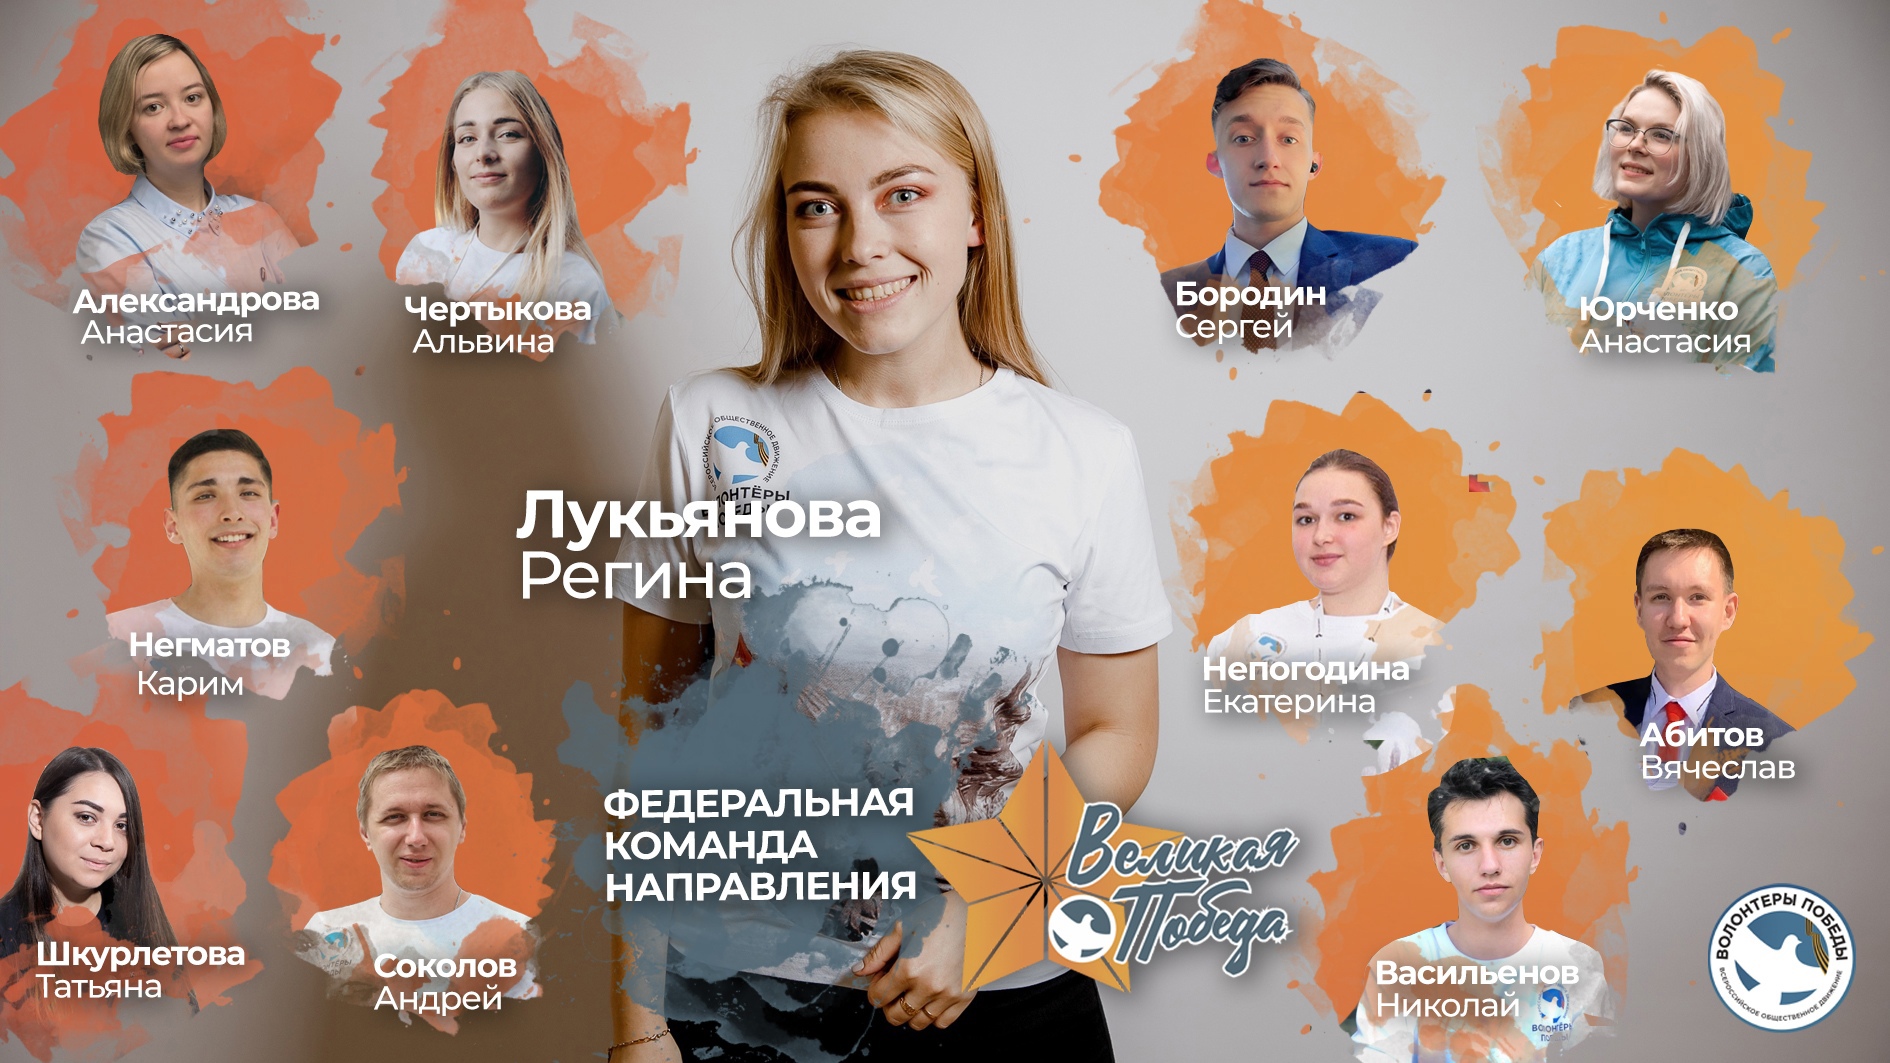 Студентка СПбГИК вошла в федеральную команду «Великая Победа»